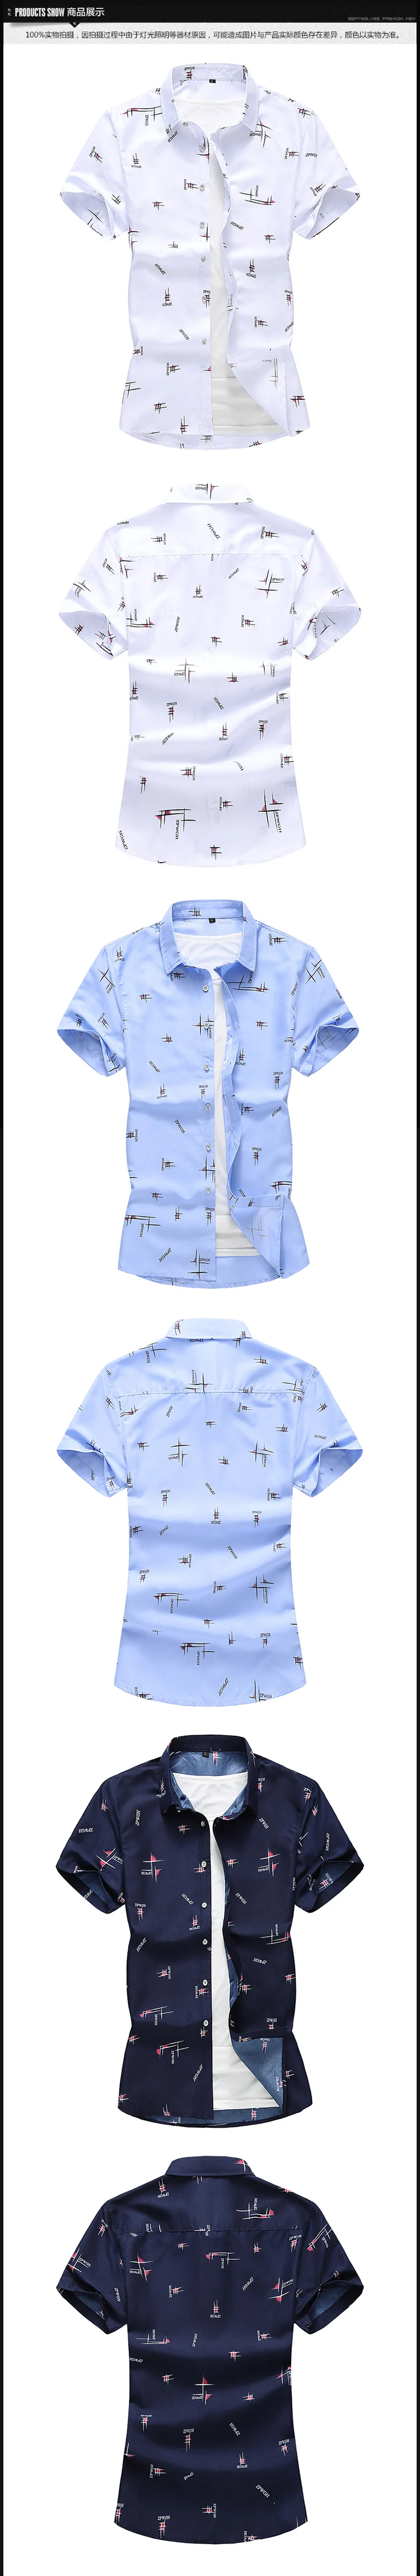 Размеры 7XL письмо рубашка с принтом Новинка 2019 года мужская одежда рубашки для мальчиков бренд повседневные тонкие рубашки Fit бизнес